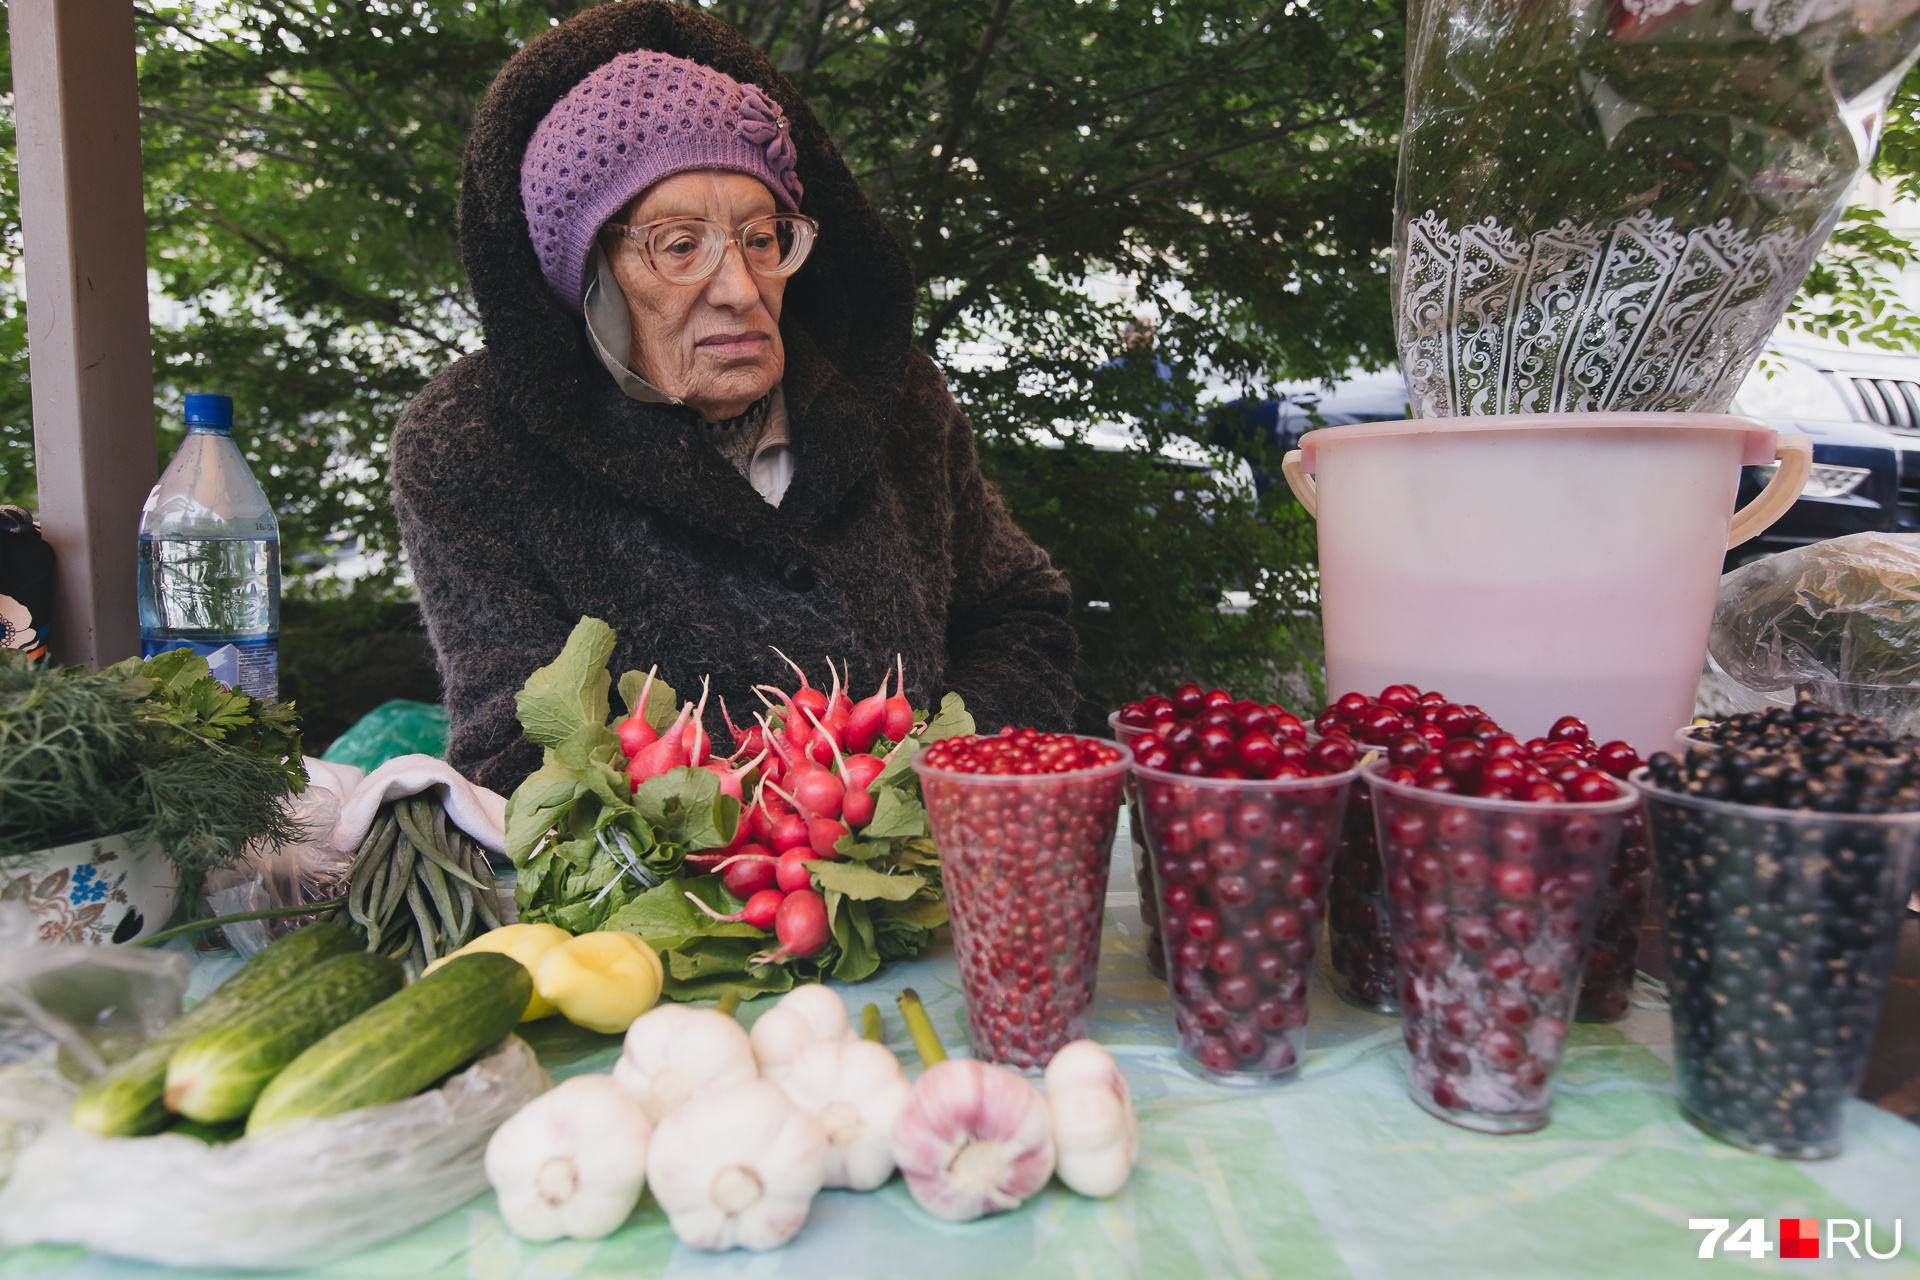 Нина Васильевна сокрушается: всё заработанное с продажи урожая уходит на бензин, чтобы ездить в сад